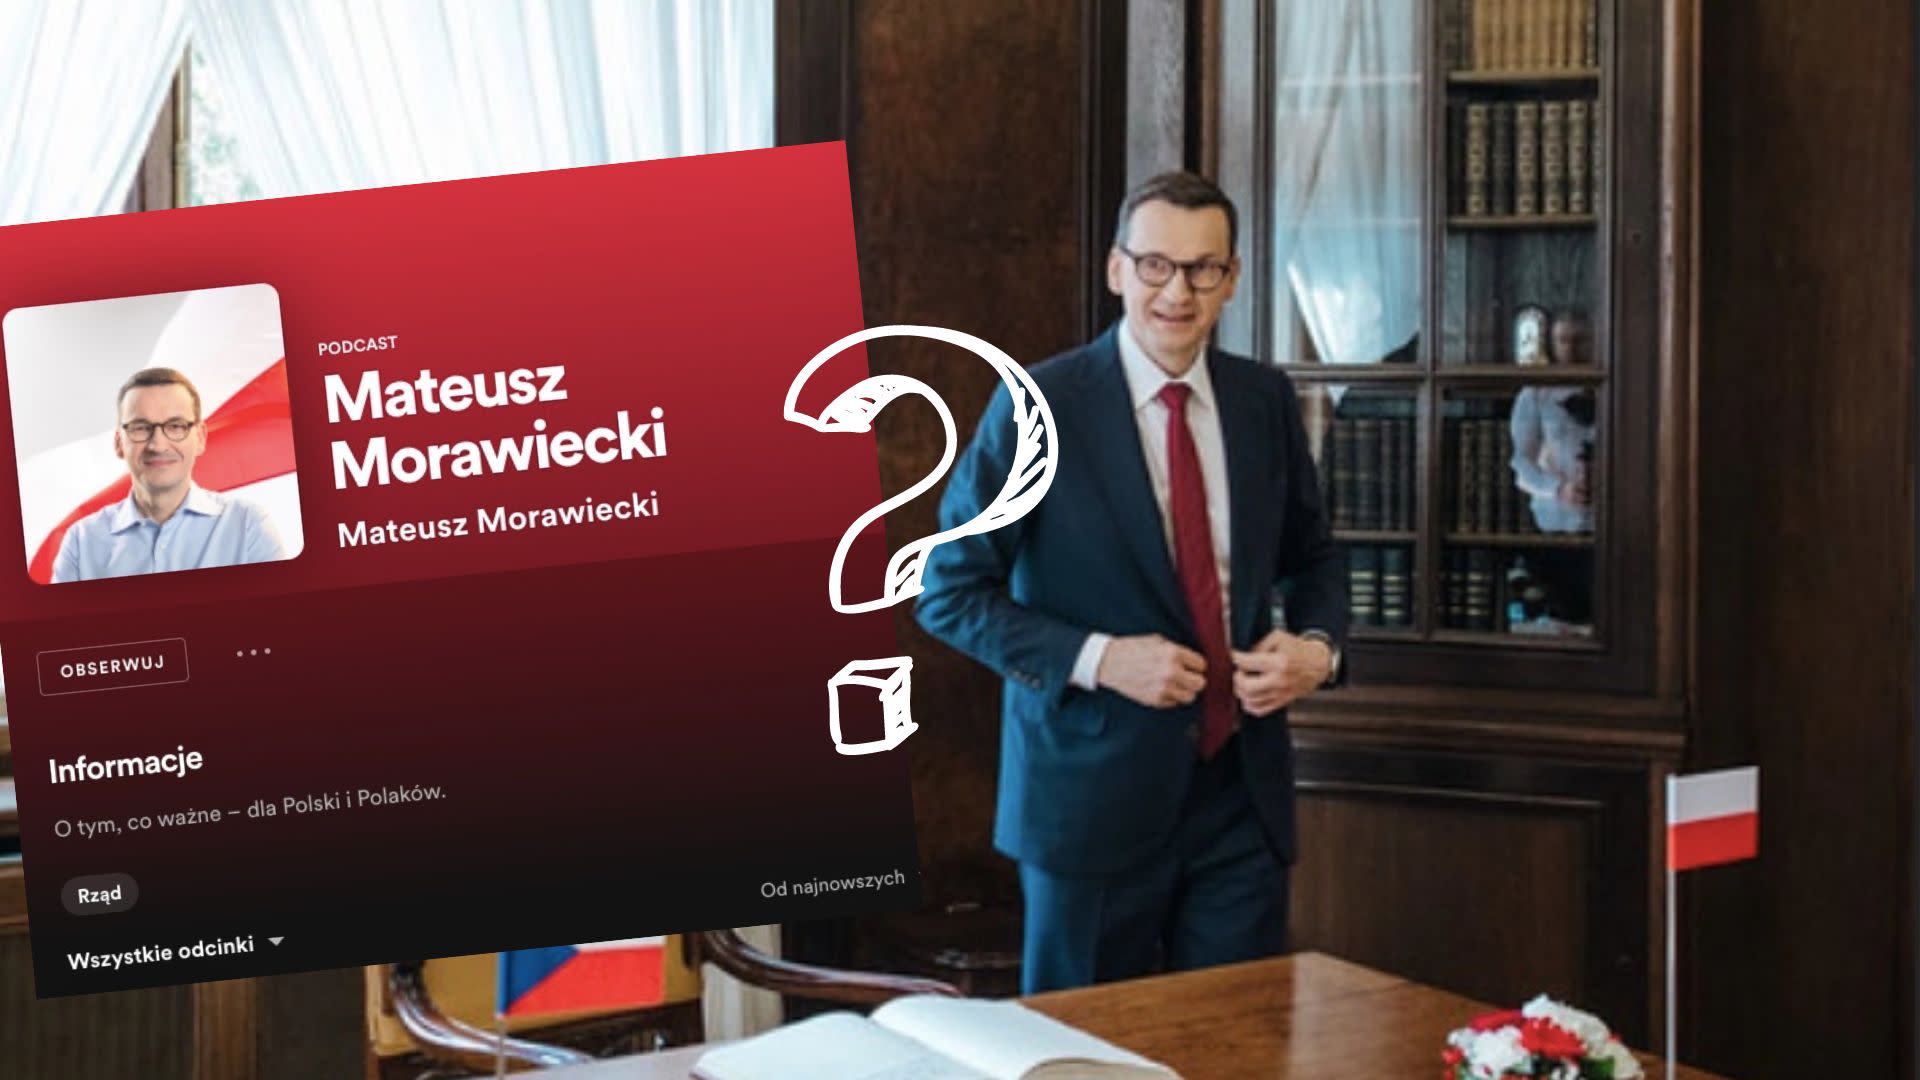 Mateusz Morawiecki Podcast: co premier chce przekazać Polakom?